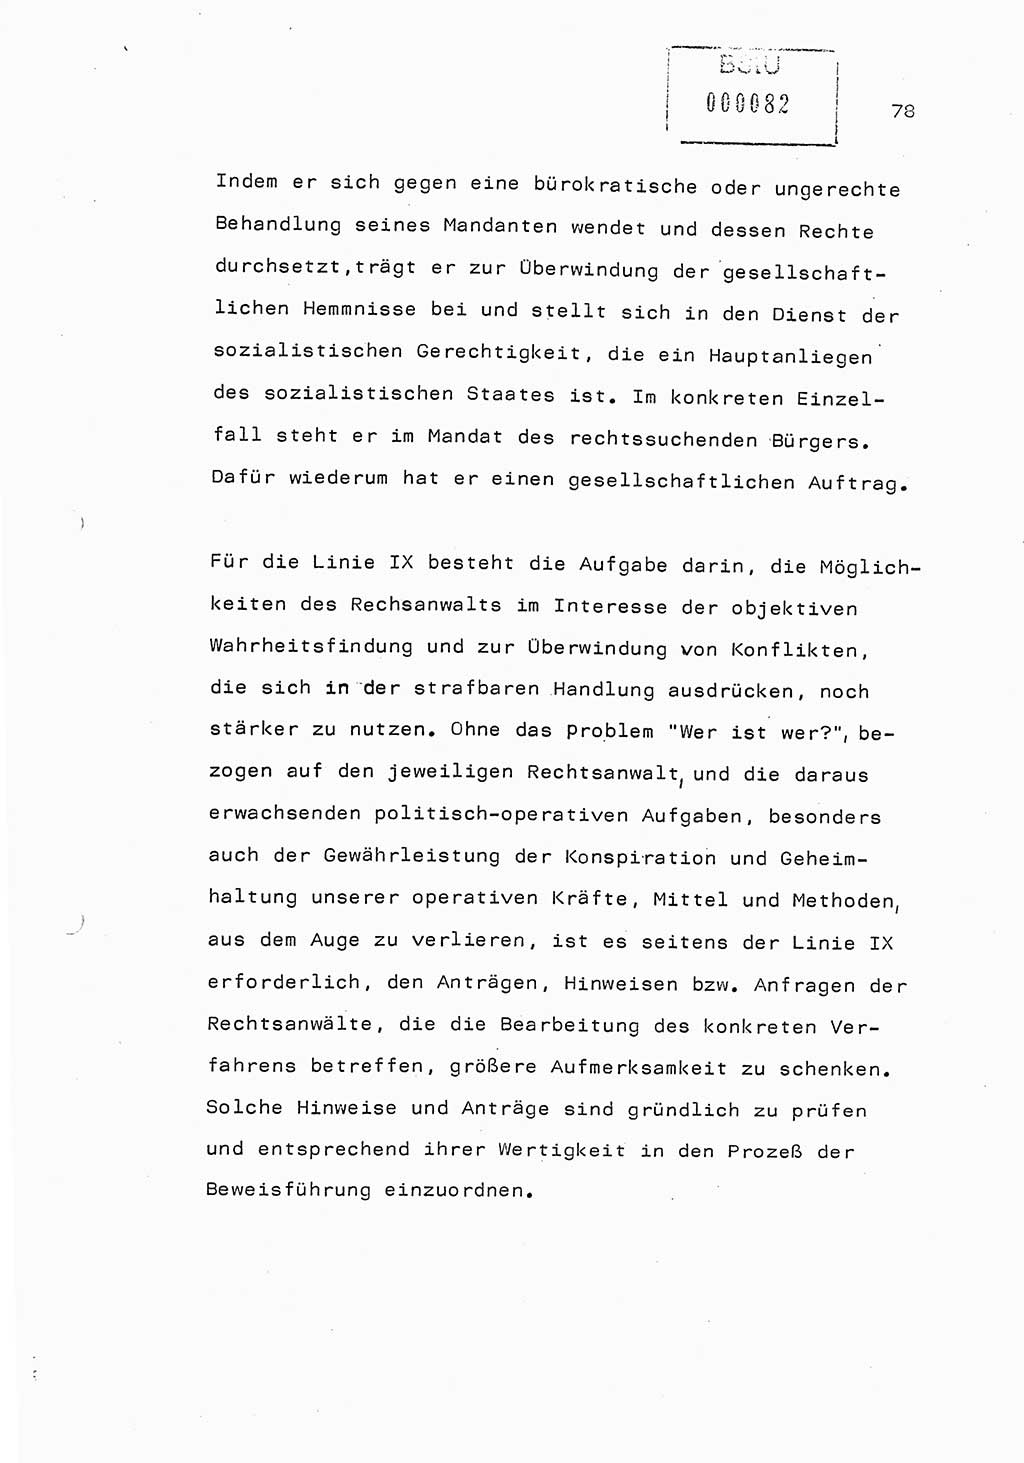 Referat (Generaloberst Erich Mielke) auf der Zentralen Dienstkonferenz am 24.5.1979 [Ministerium für Staatssicherheit (MfS), Deutsche Demokratische Republik (DDR), Der Minister], Berlin 1979, Seite 78 (Ref. DK DDR MfS Min. /79 1979, S. 78)